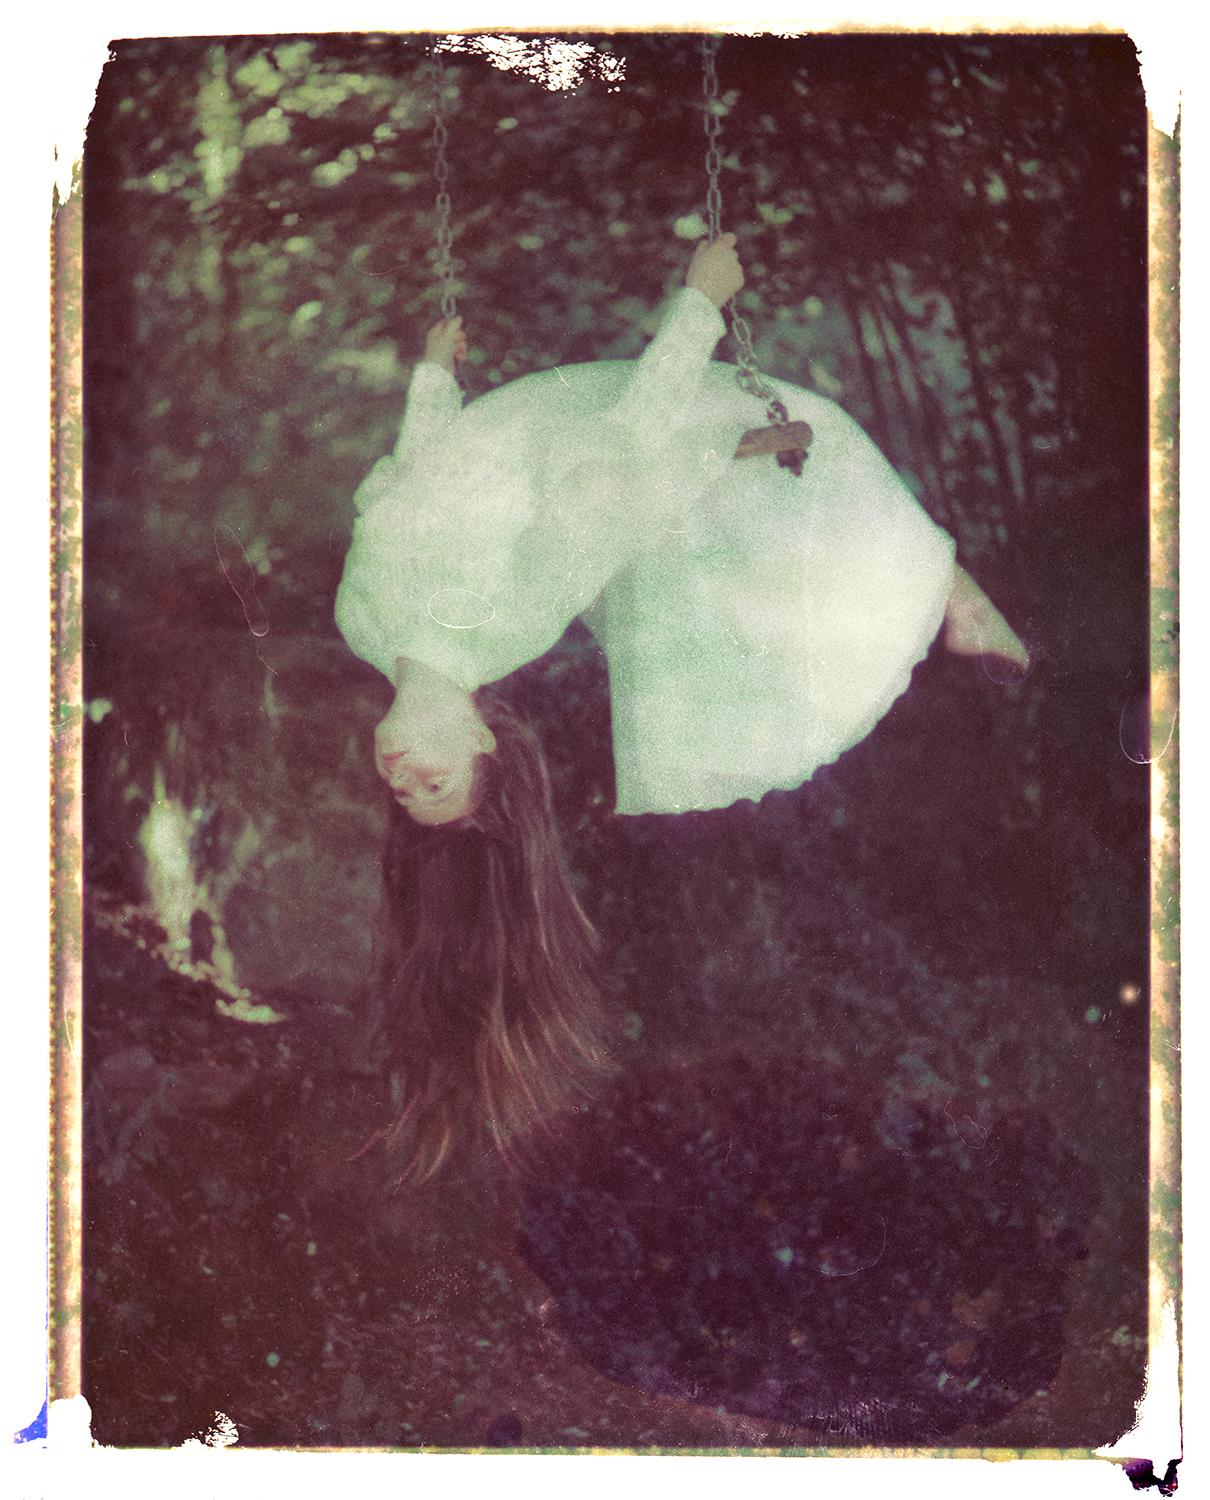 A Young Bride - Contemporary, Polaroid, Photograph, abstract